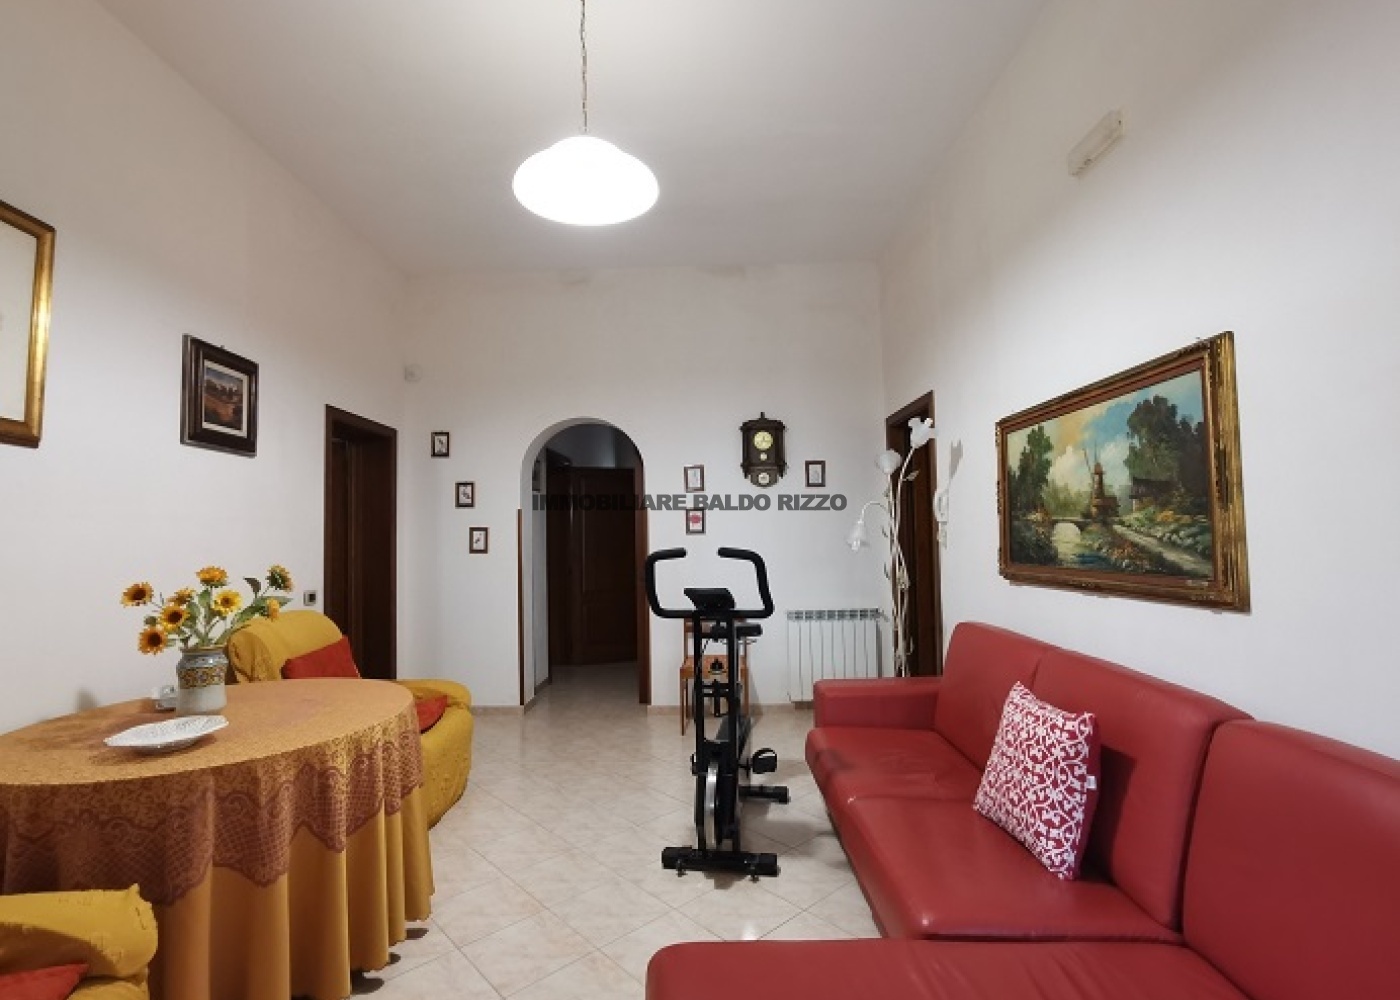 via Vercelli,91026,3 Bedrooms Bedrooms,2 BathroomsBathrooms,Villa,1,1342